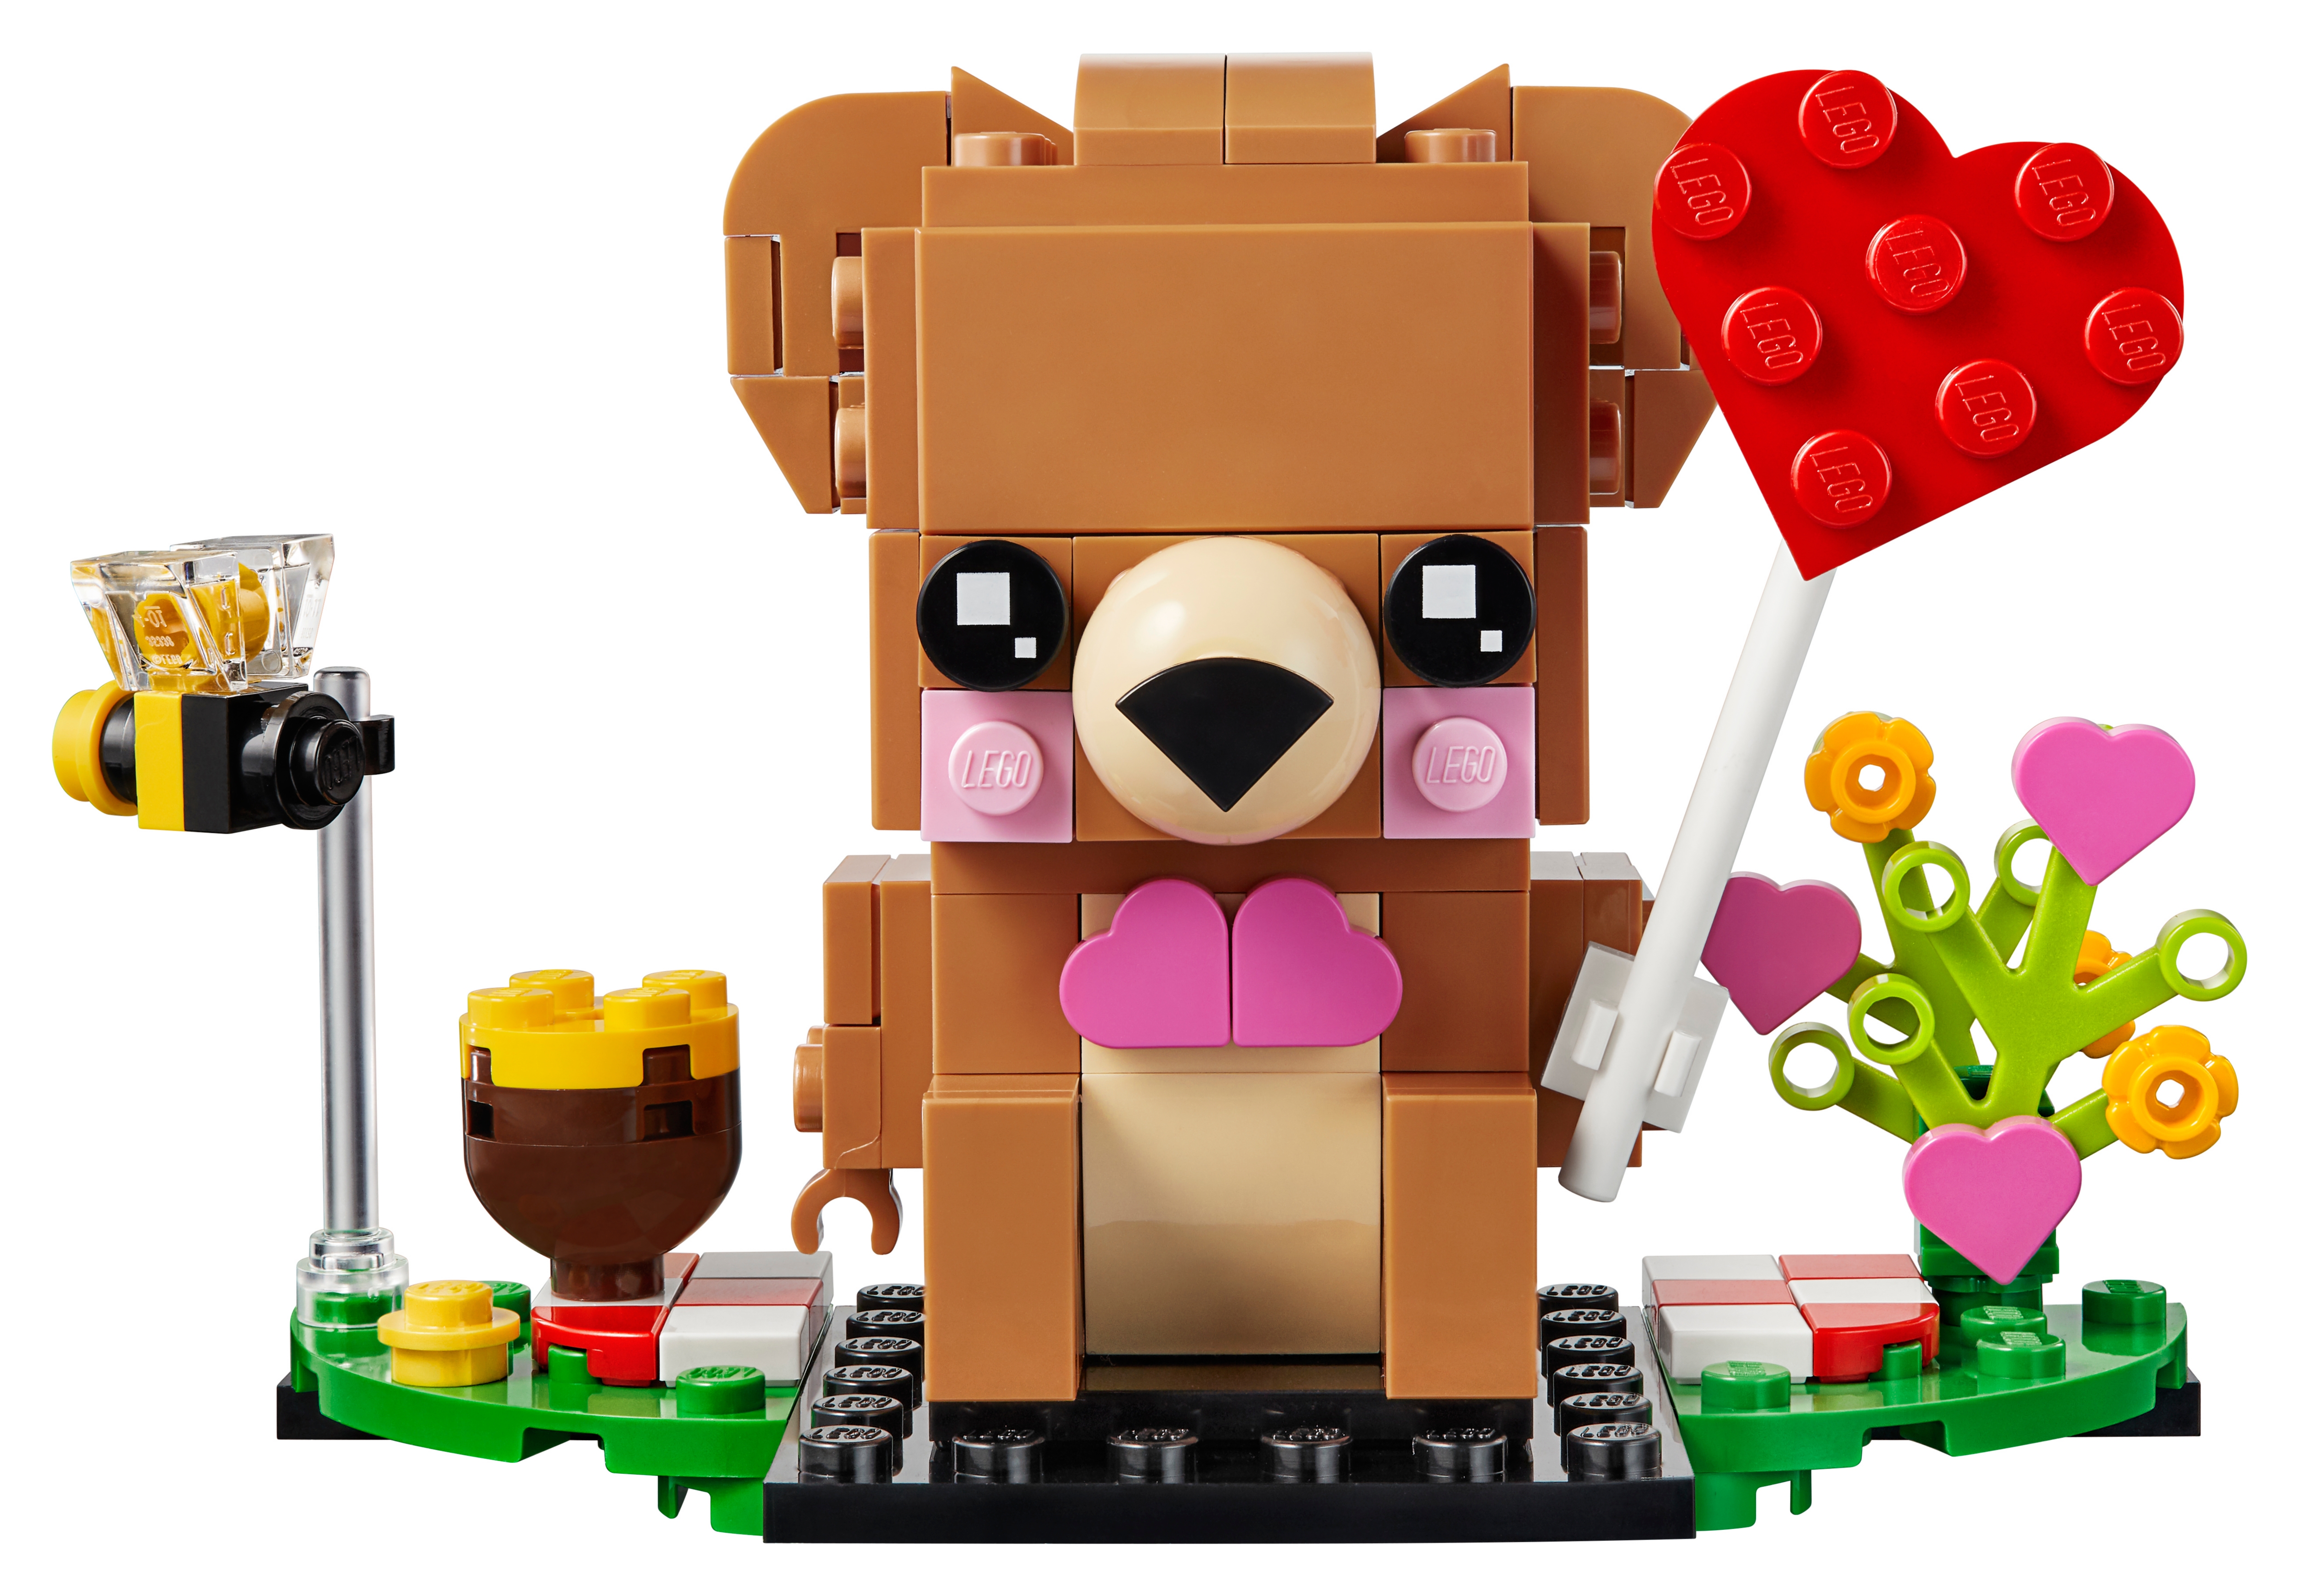 LEGO BrickHeadz 40379 Walentynkowy miś